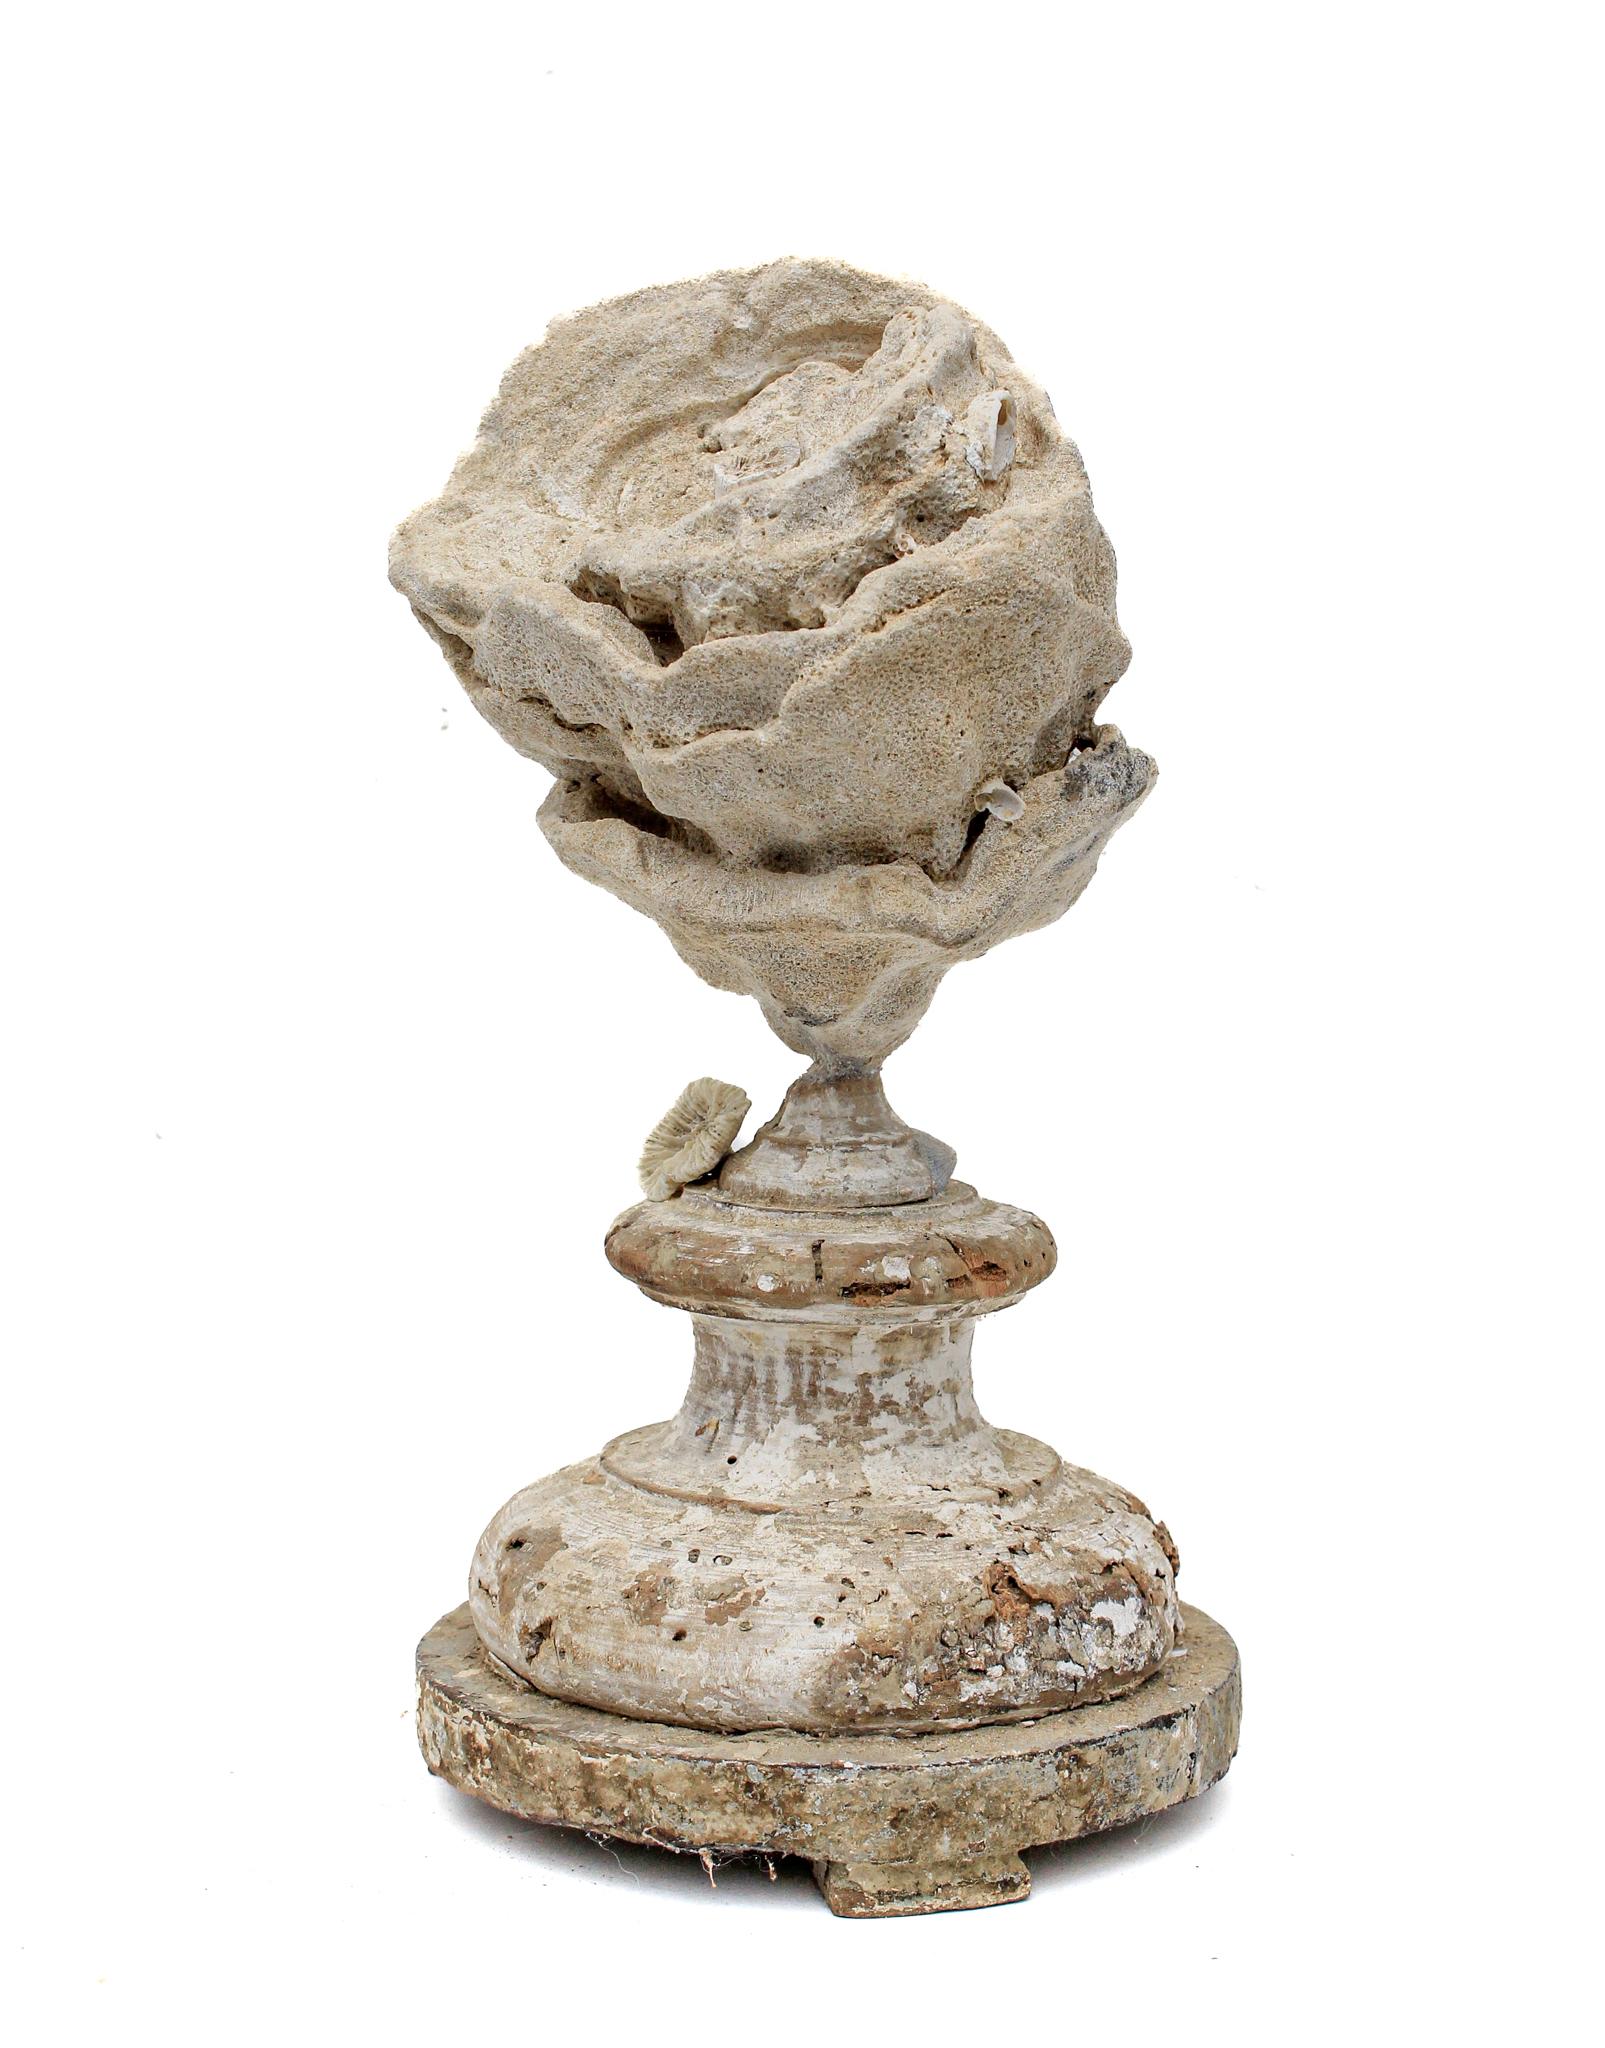 base de fragment italien du XVIIe siècle montée d'un grand stromatolite et ornée de corail rose fossile.

Ce fragment provient d'une église de Florence. Il a été trouvé et sauvé de l'inondation historique de la rivière Arno en 1966. Le